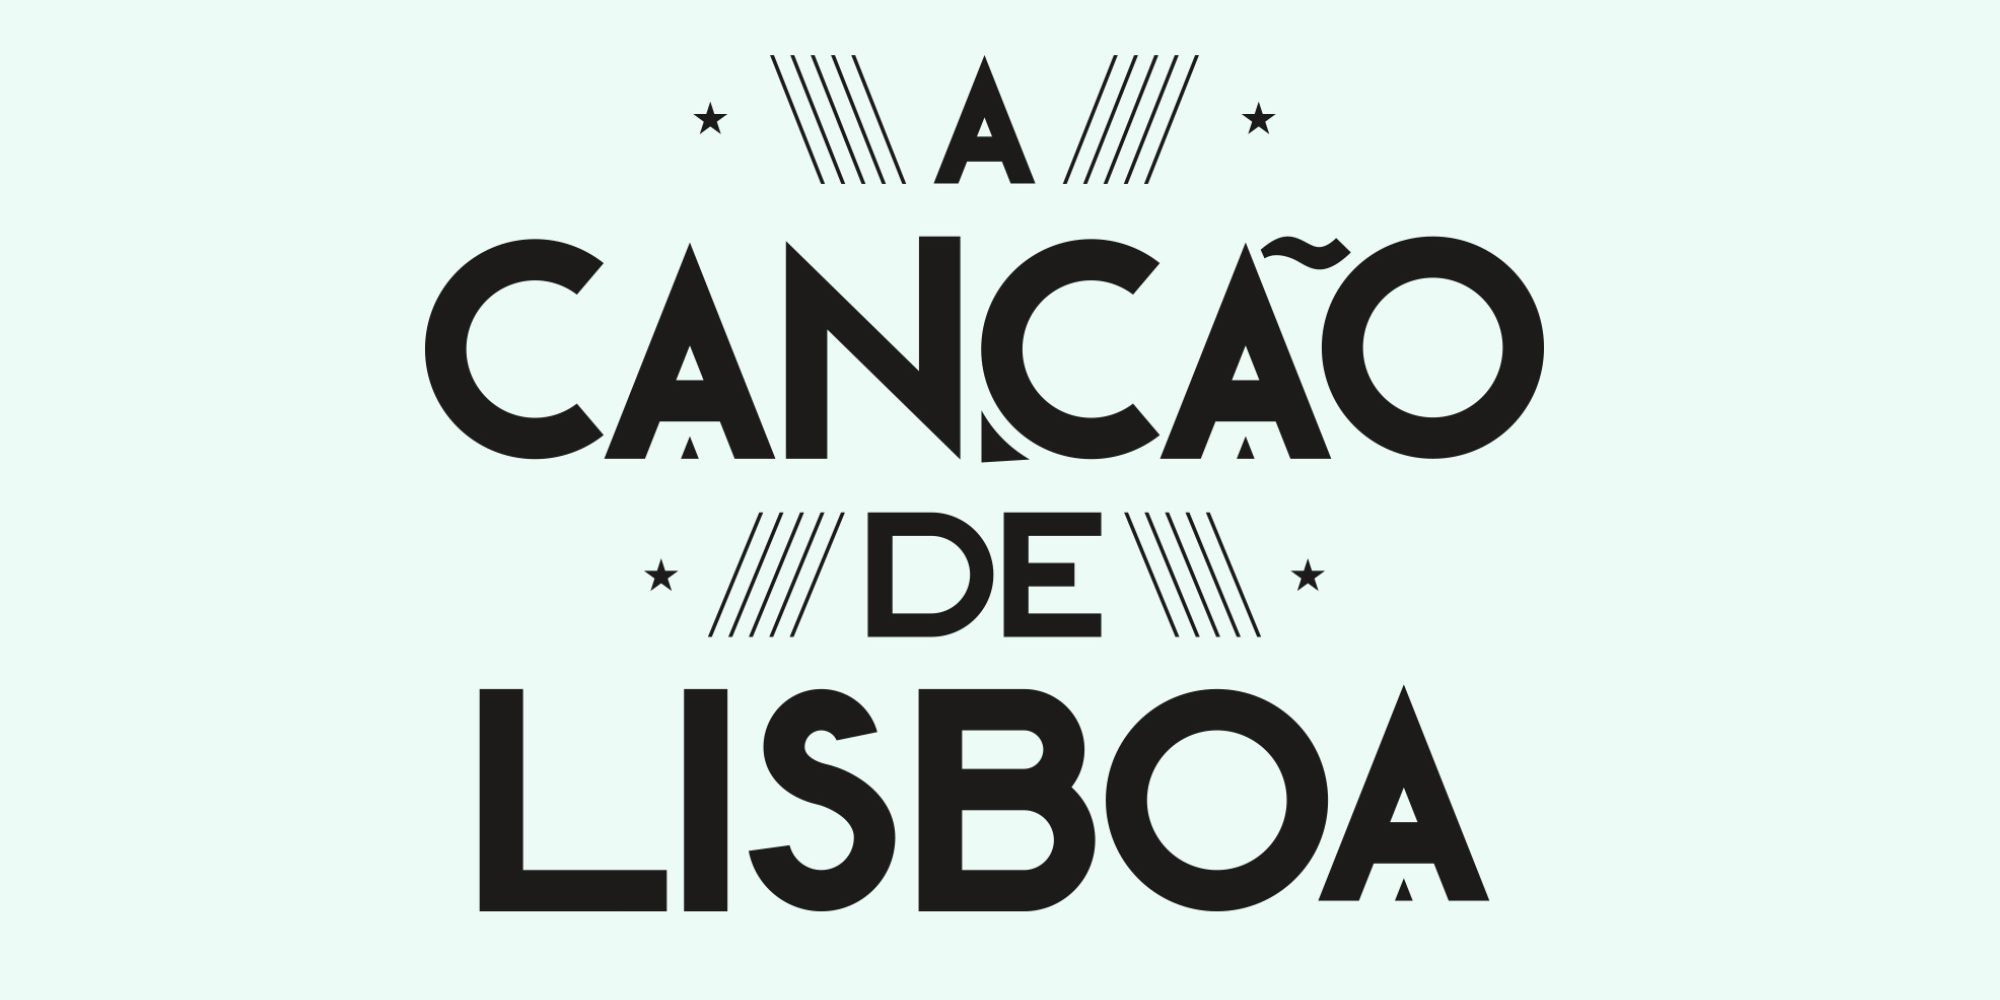  RTP1 aposta em «A Canção de Lisboa» para este domingo à noite